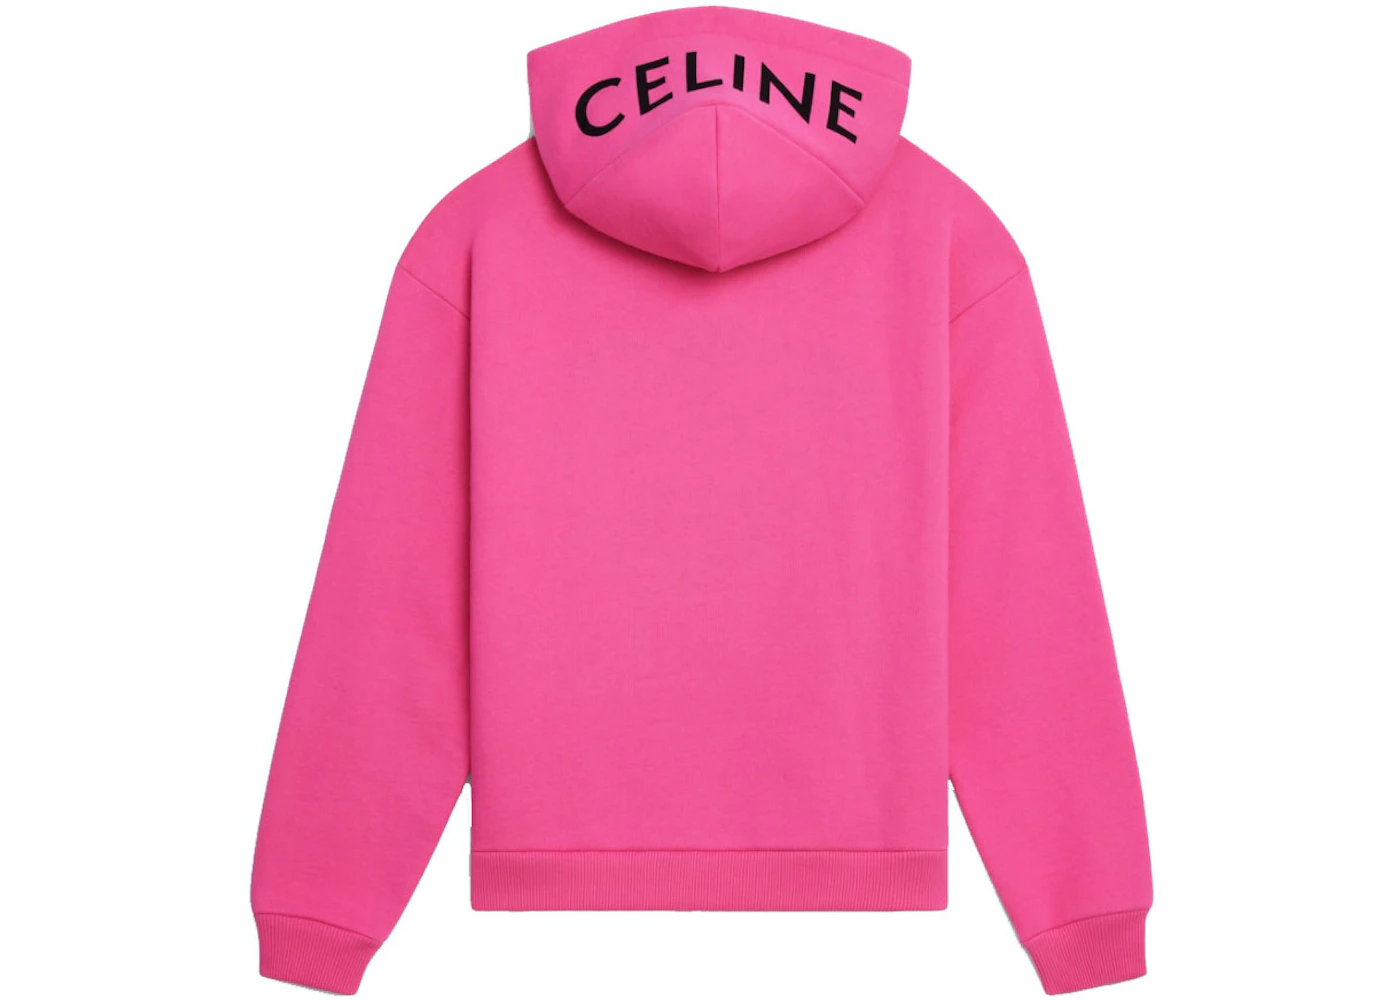 Celine Loose Sweatshirt In Cotton Fleece Hot Pink Black